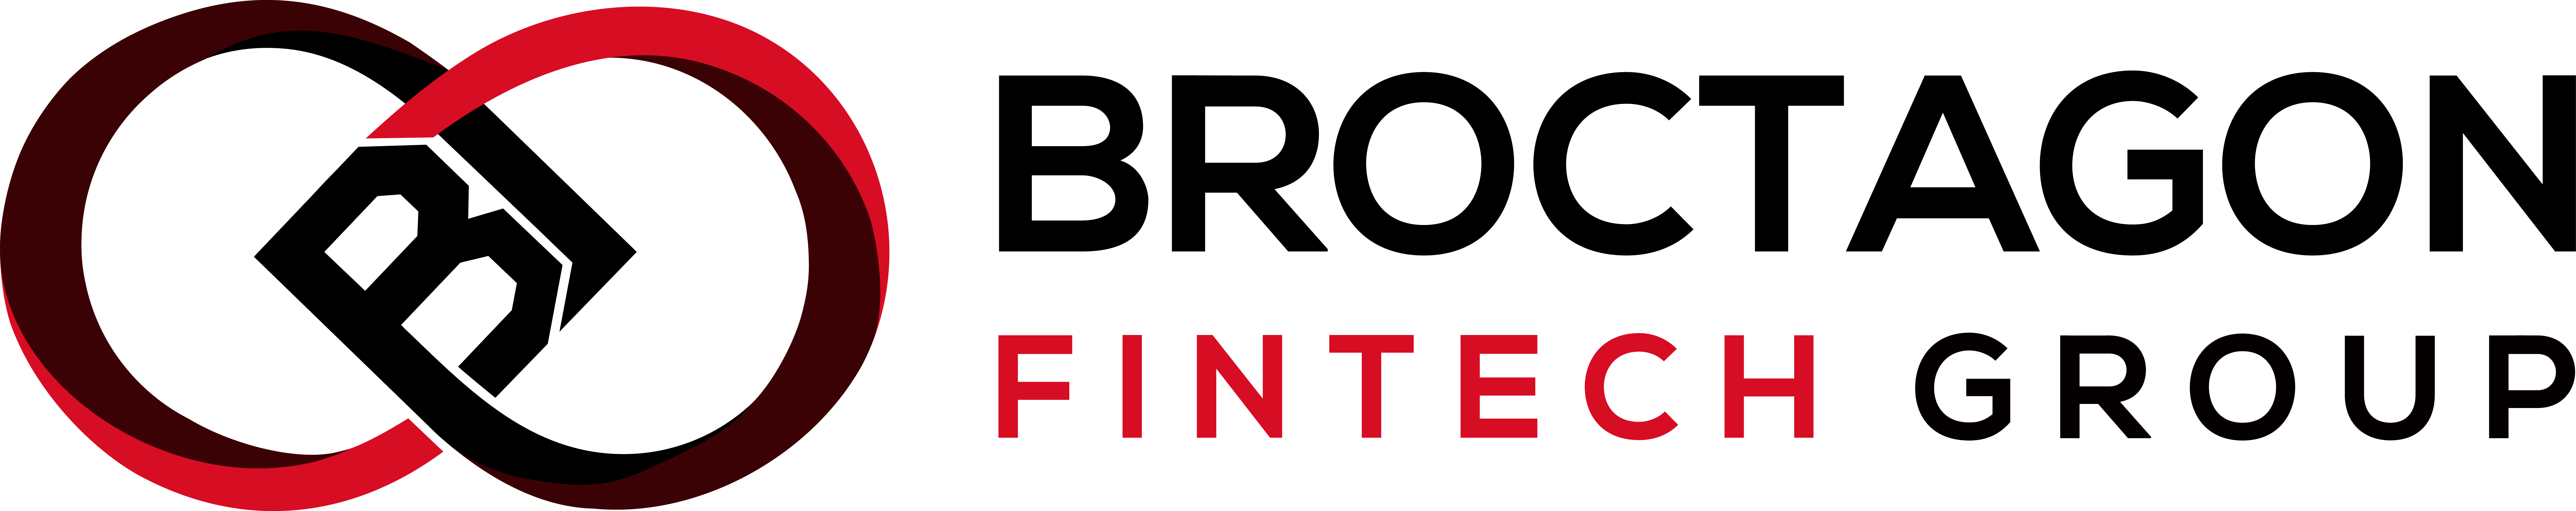 Broctagon Fintech Group Logo